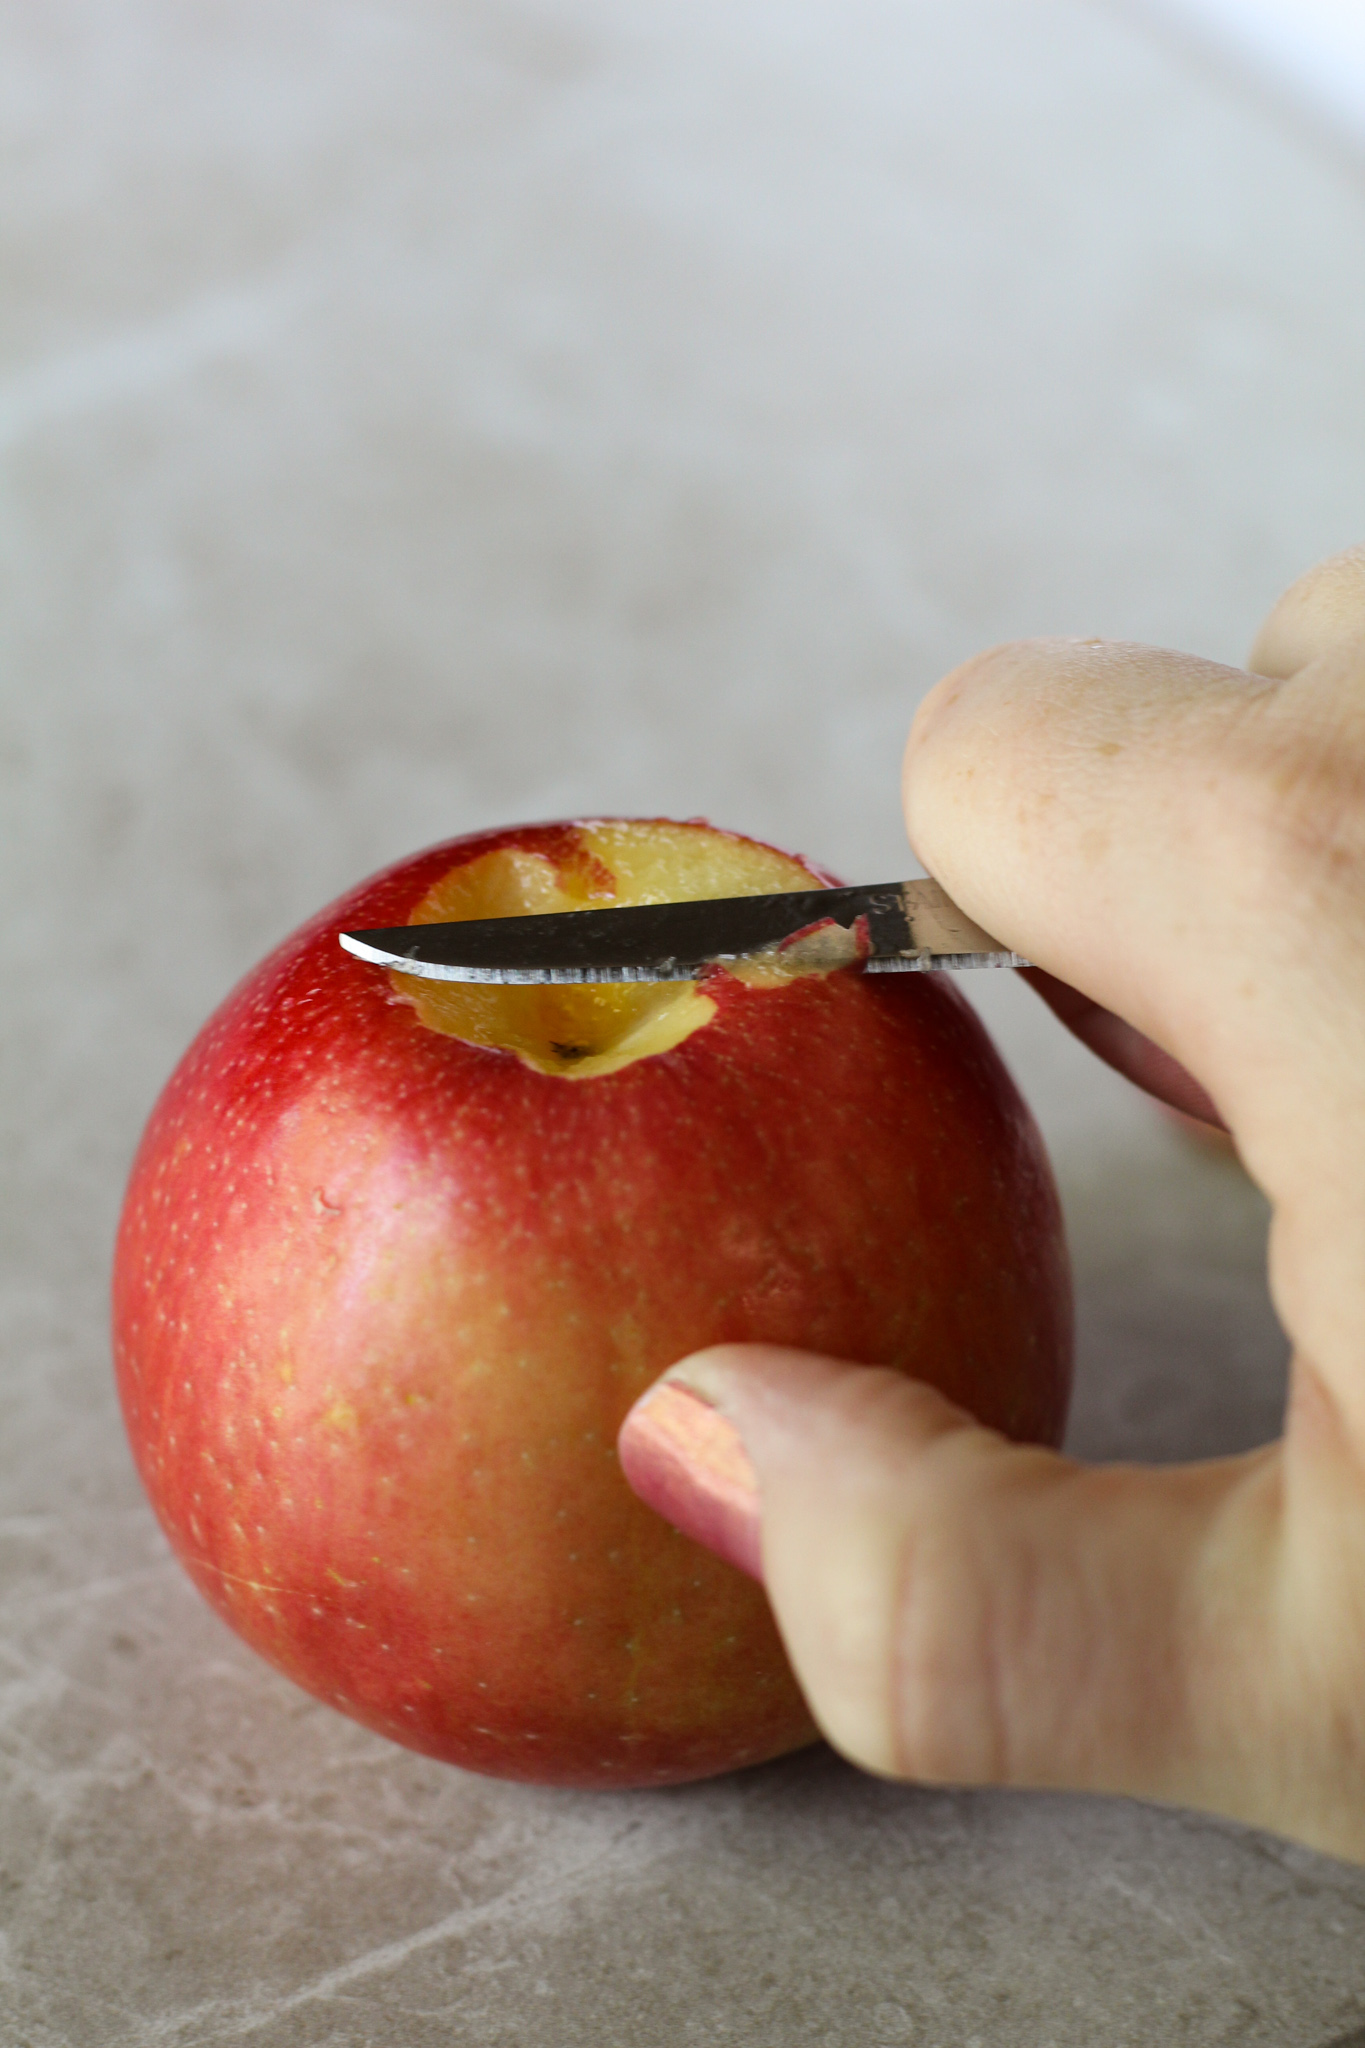 Cutting bottom off an apple